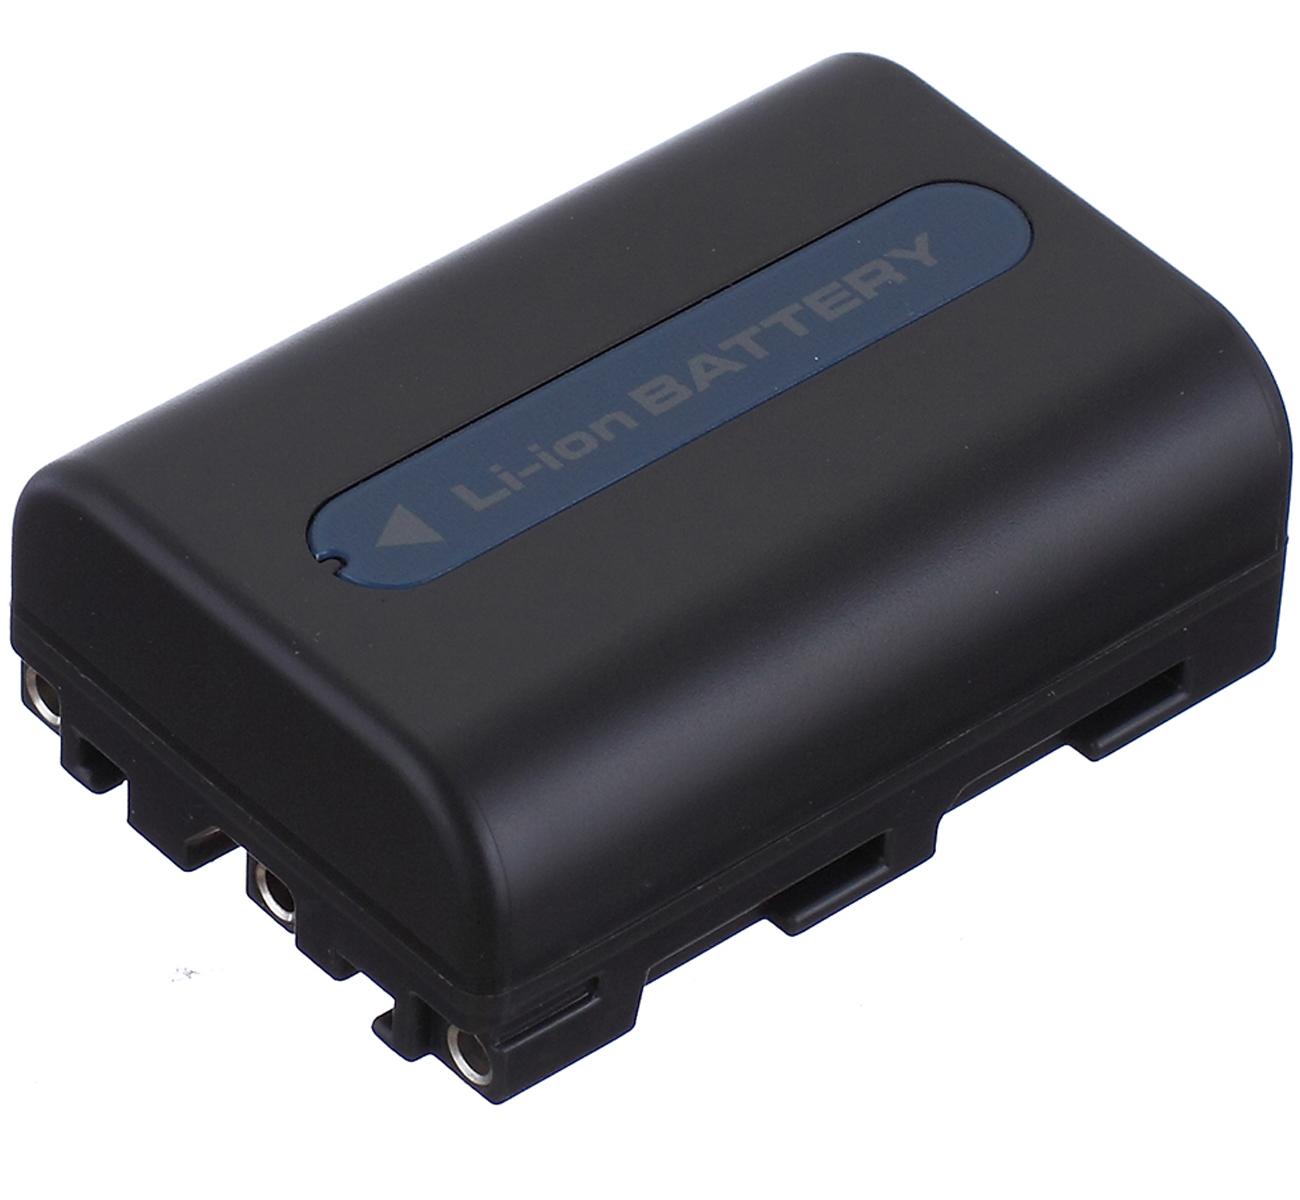 Изображение товара: Батарейный блок для видеокамеры sony DCR-TRV40E, DCR-TRV50E, DCR-TRV60E, DCR-TRV70E, DCR-TRV75E, DCR-TRV80E Handycam